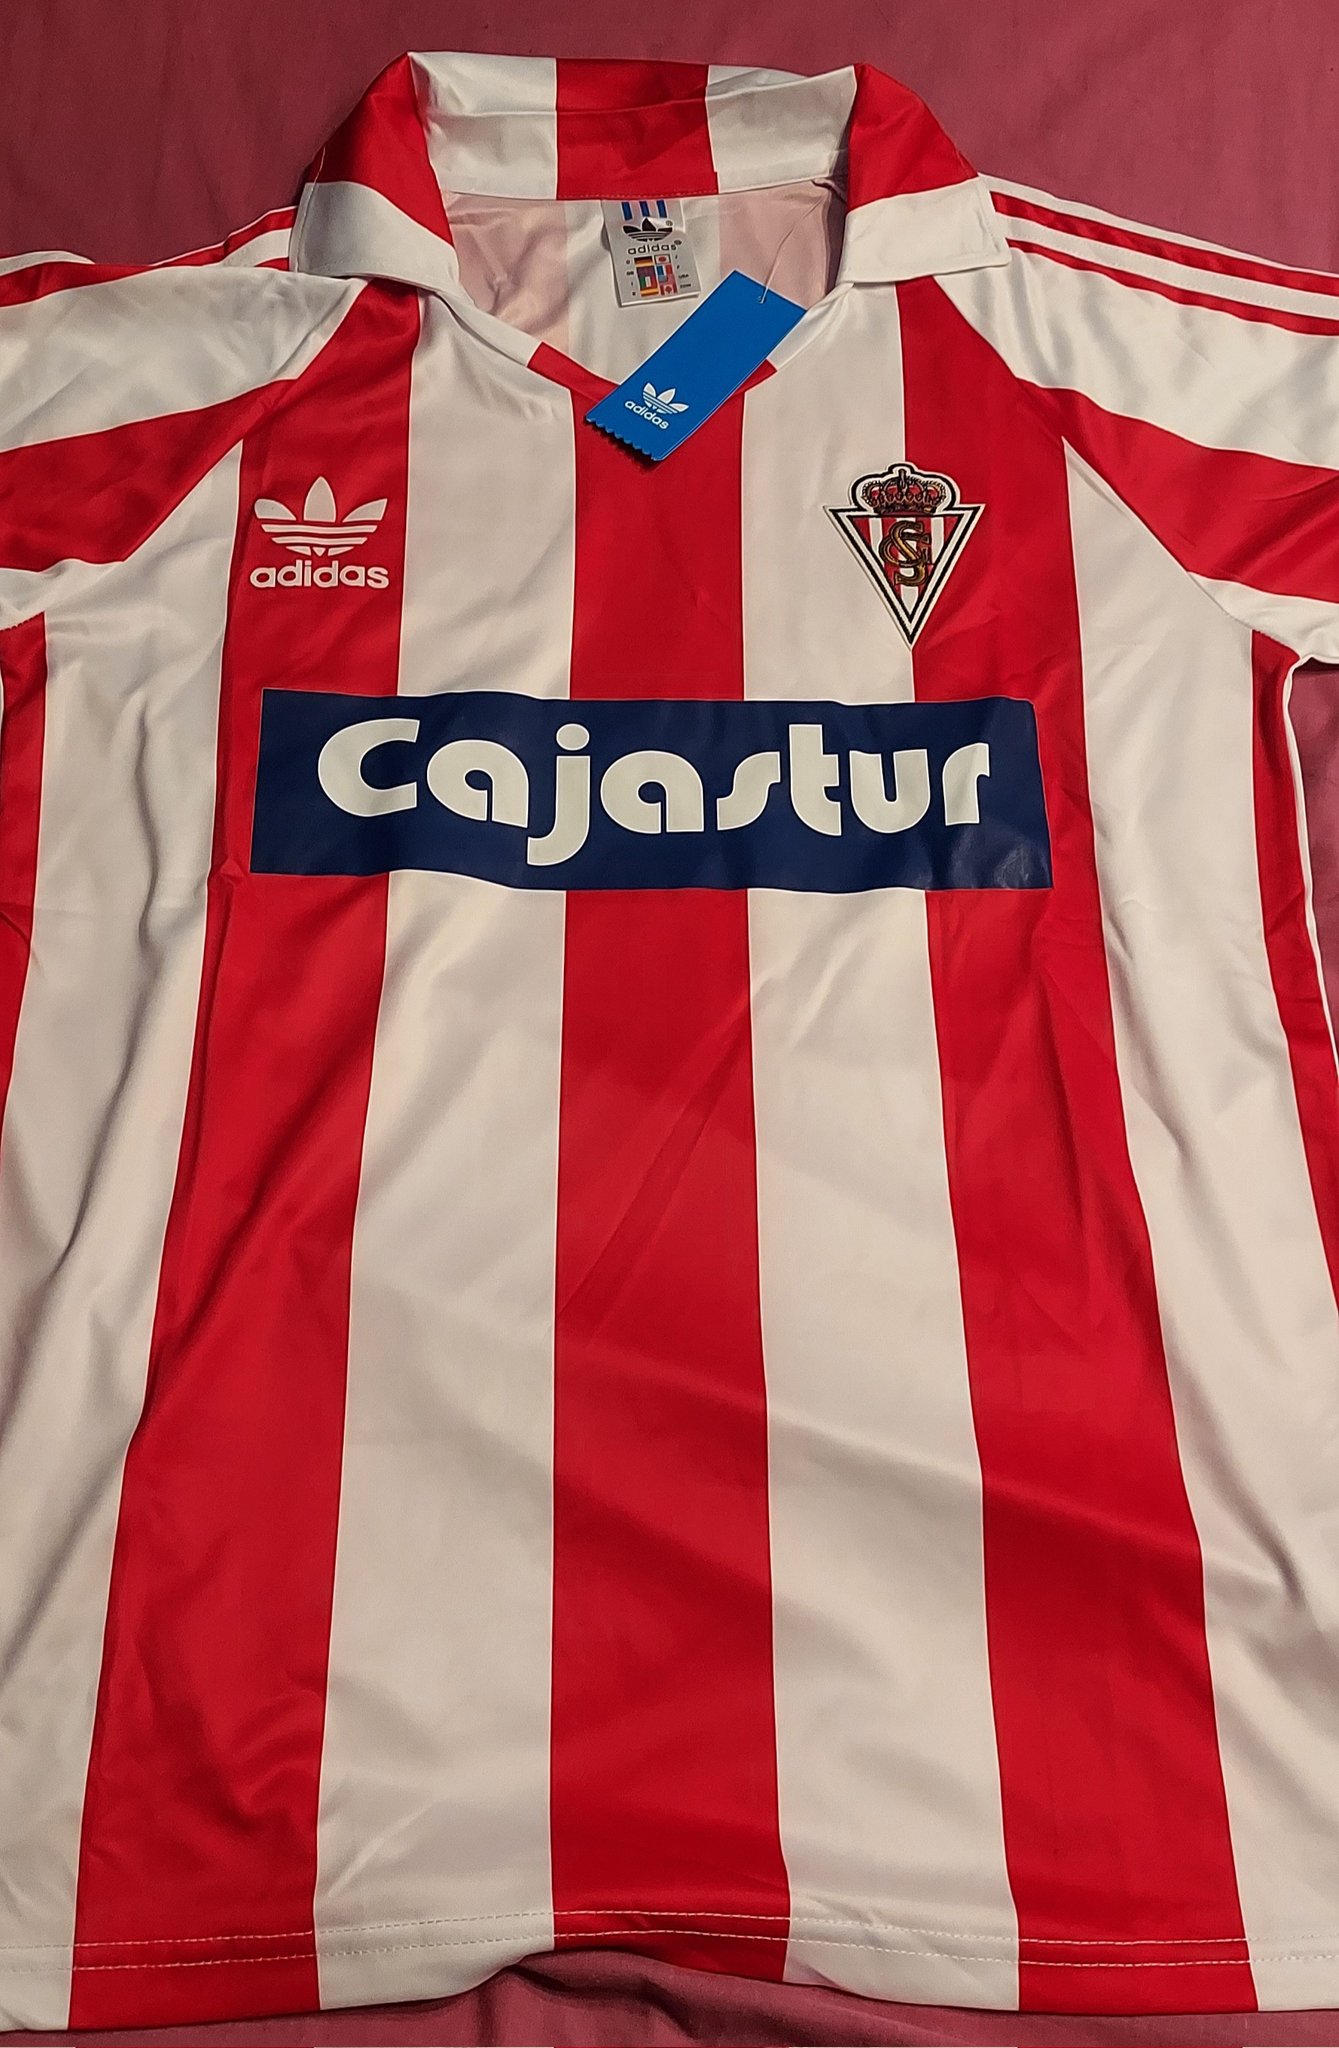 Graphitex on Twitter: "➡️Sporting de Gijón - adidas.❤️🤍 Created by Graphitex. del Sporting, turno de tributo desde mi rinconcito a un genio, a un señor, a brujo. Camiseta